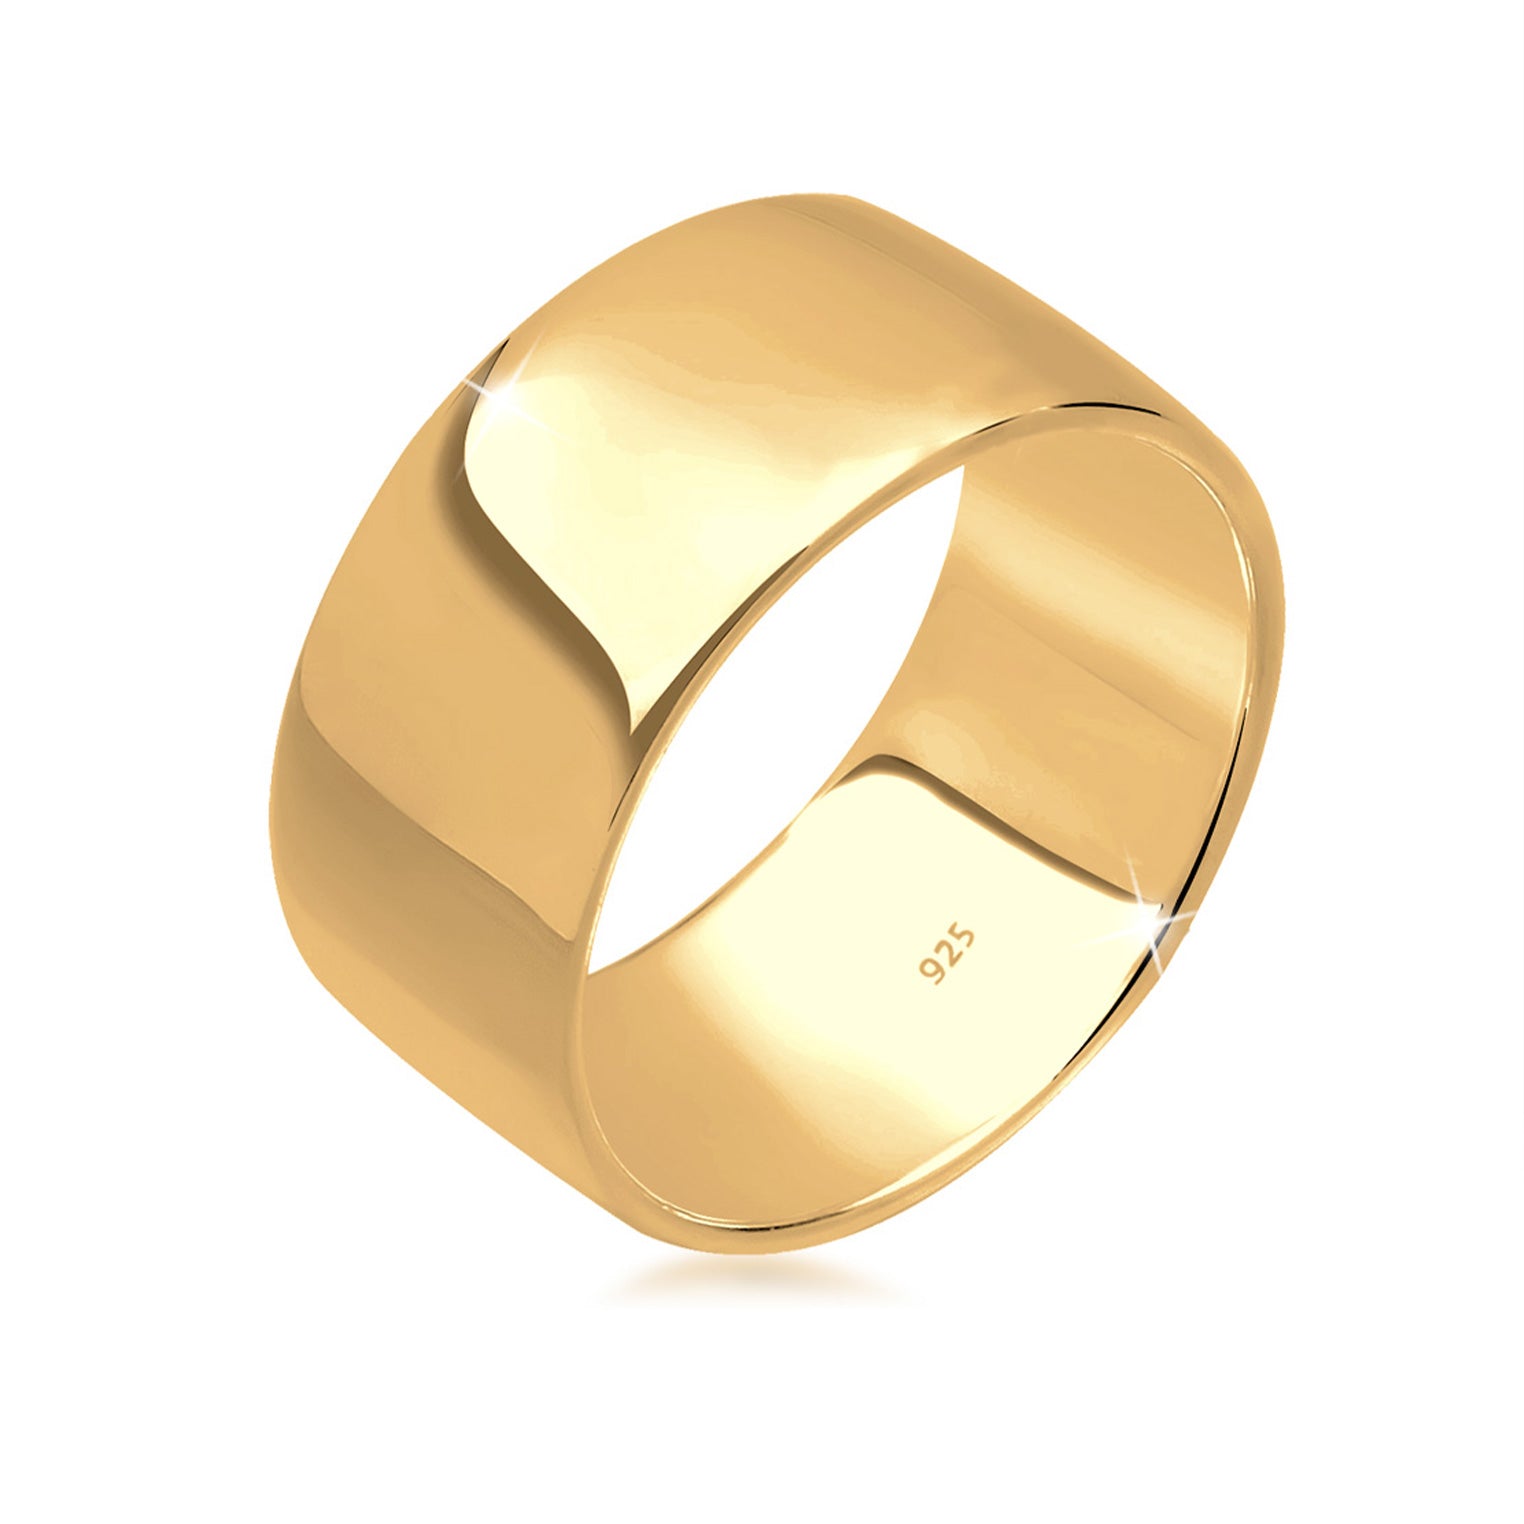 Ringe aus Silber oder Gold | bei Elli kaufen | TOP Auswahl – Seite 2 – Elli  Jewelry